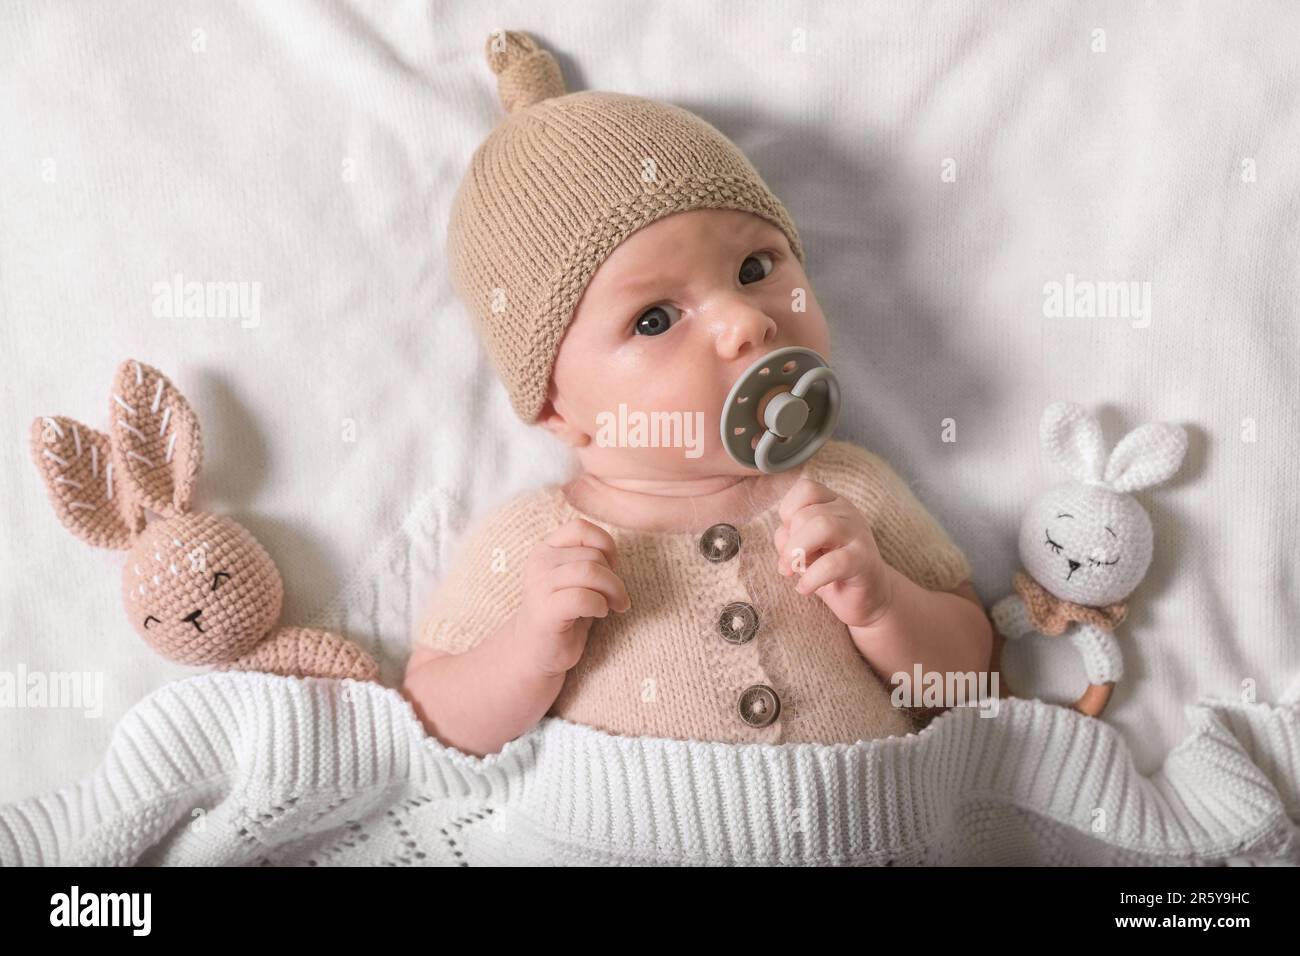 Bambino neonato carino con succhietto e giocattoli su plaid in maglia bianca, vista dall'alto Foto Stock